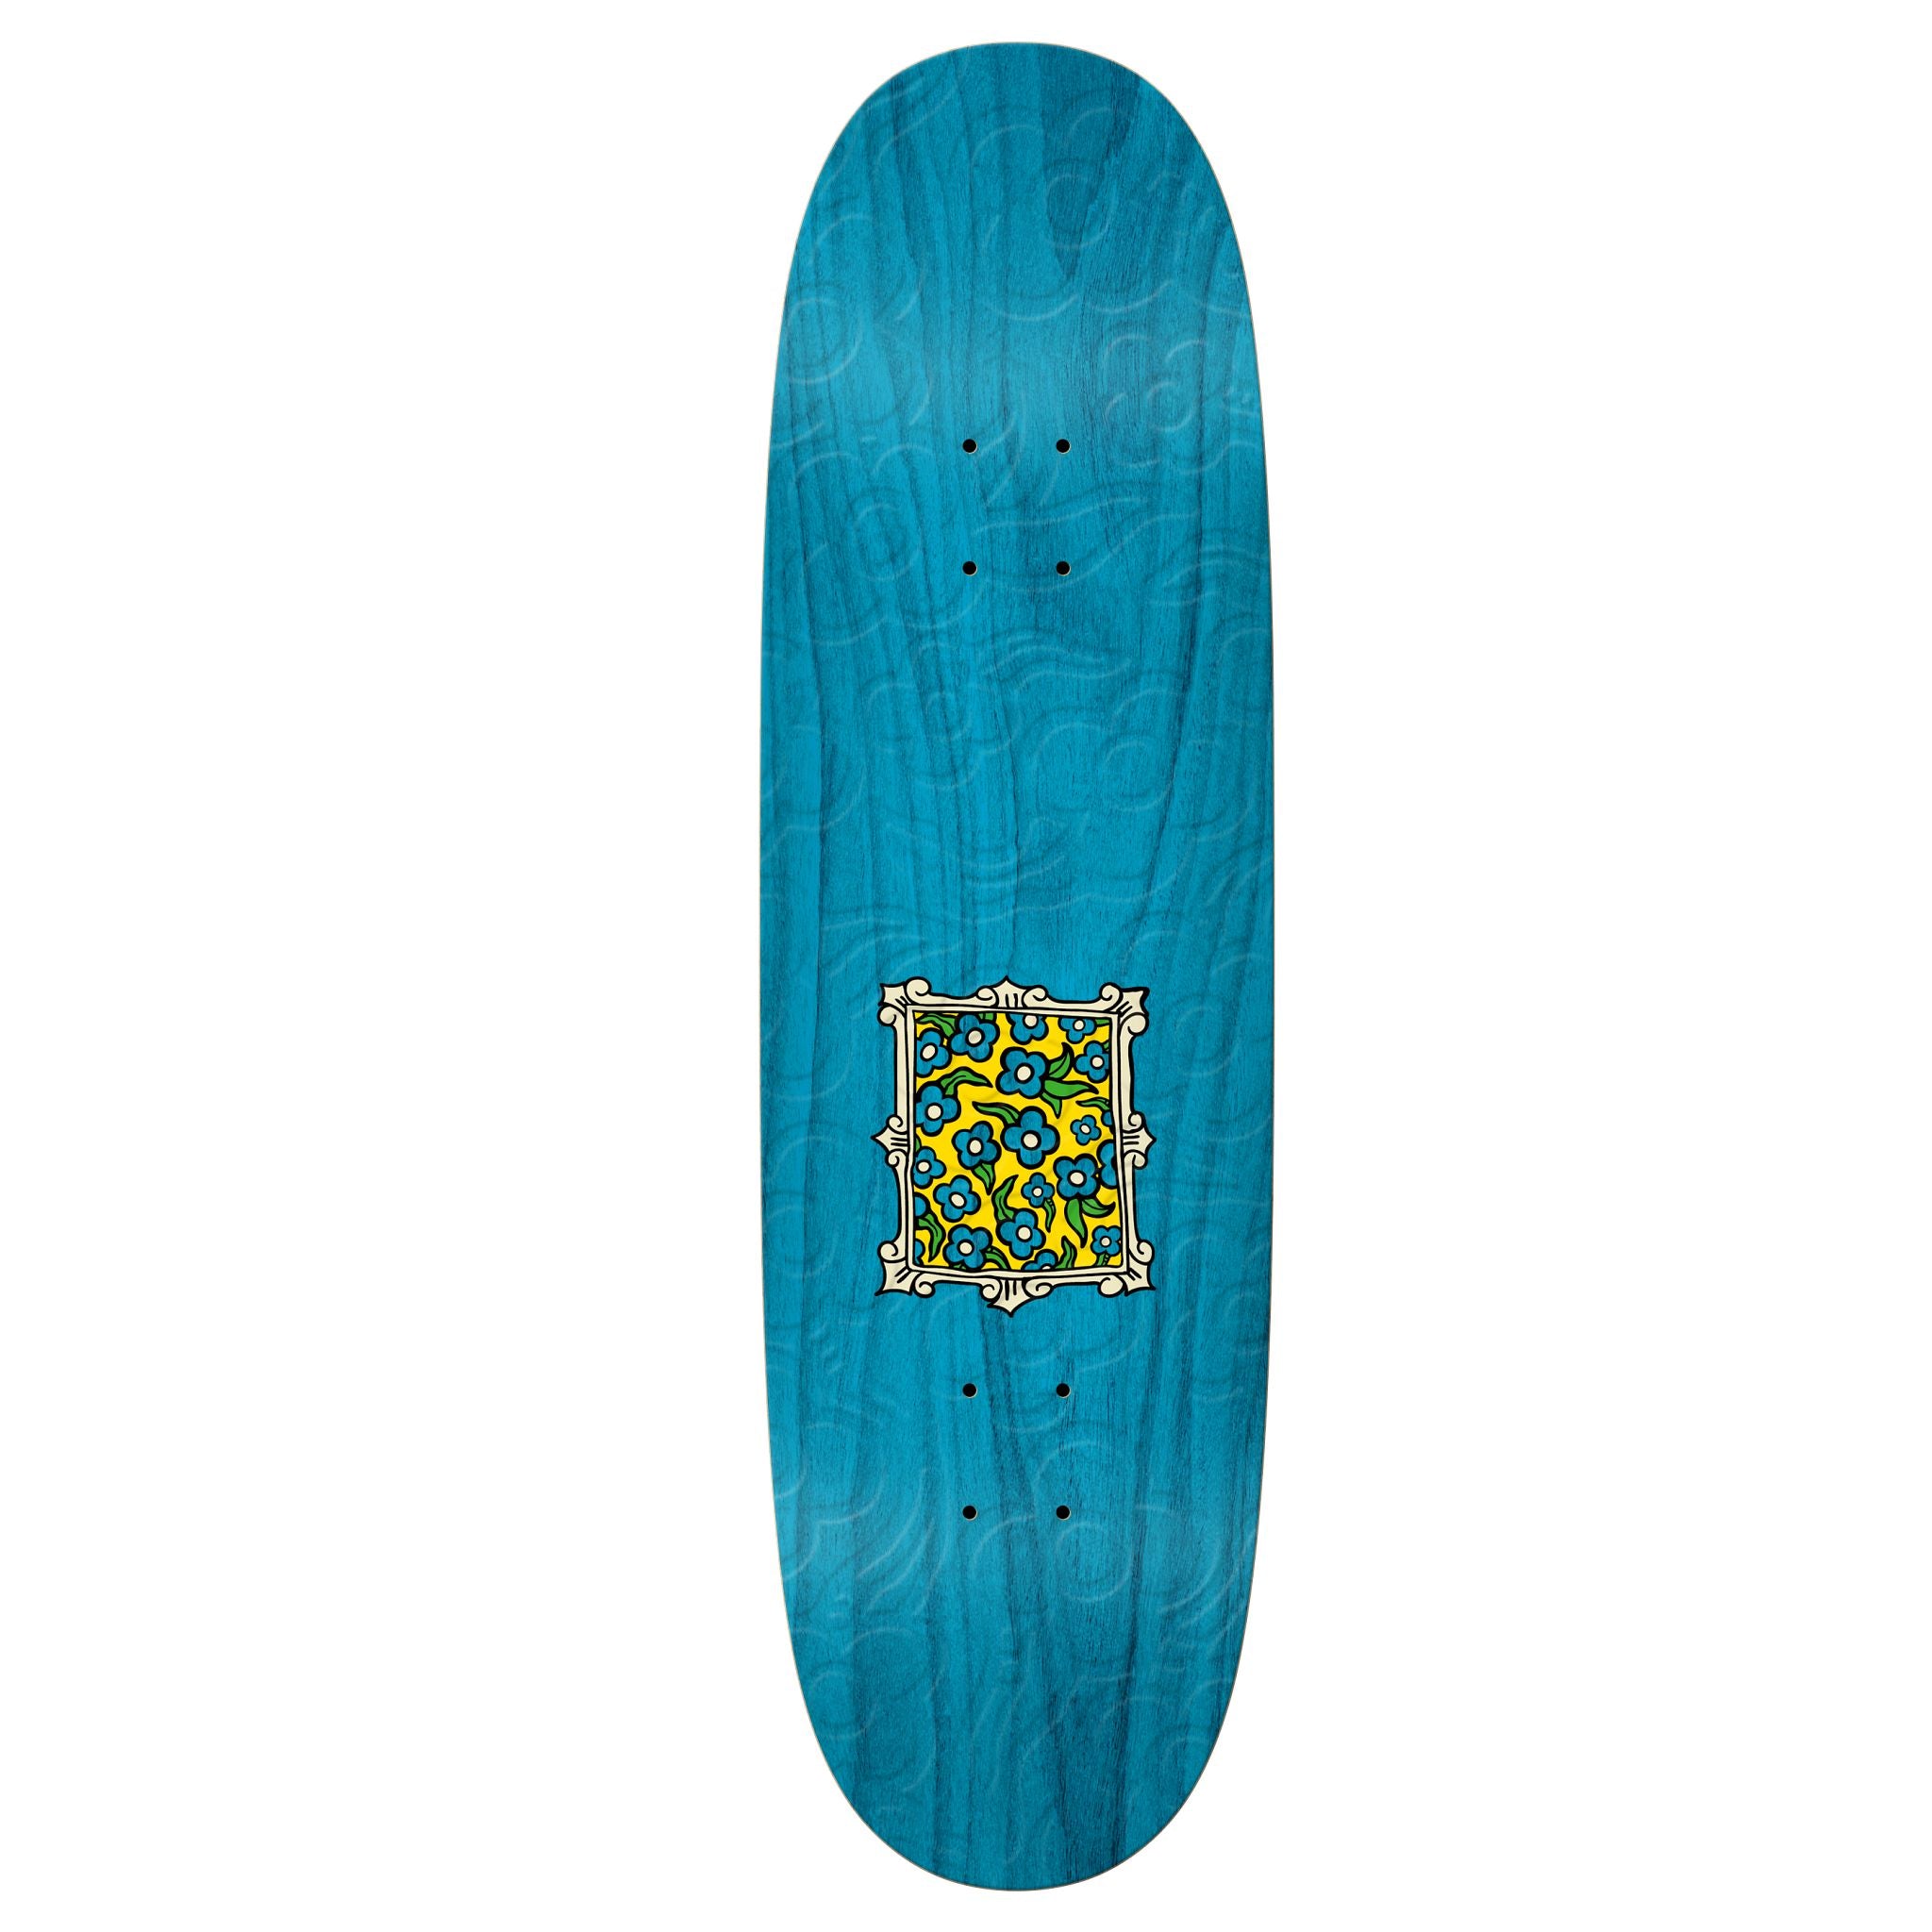 Krooked Skateboards "Flowers Embossed" 8.75" Deck